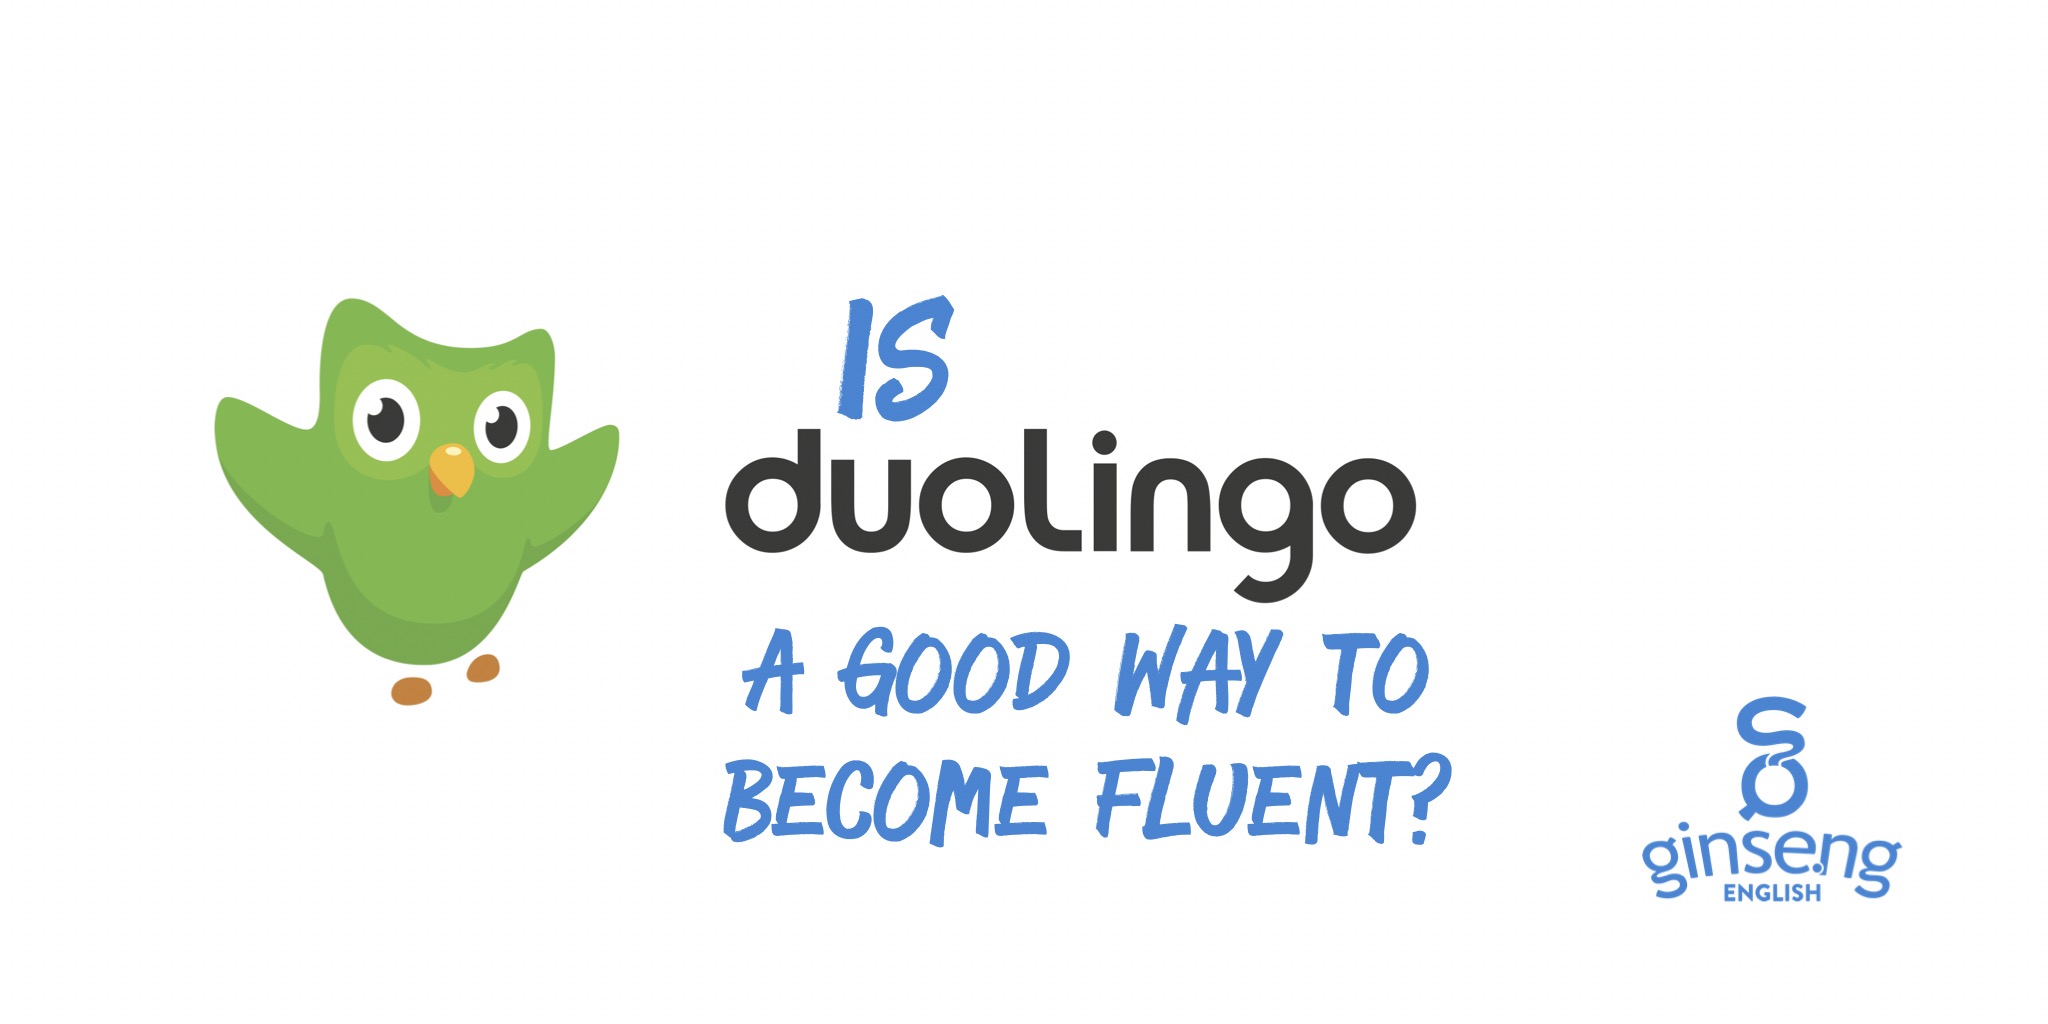 Lily duolingo r34. Мягкая игрушка Duolingo.